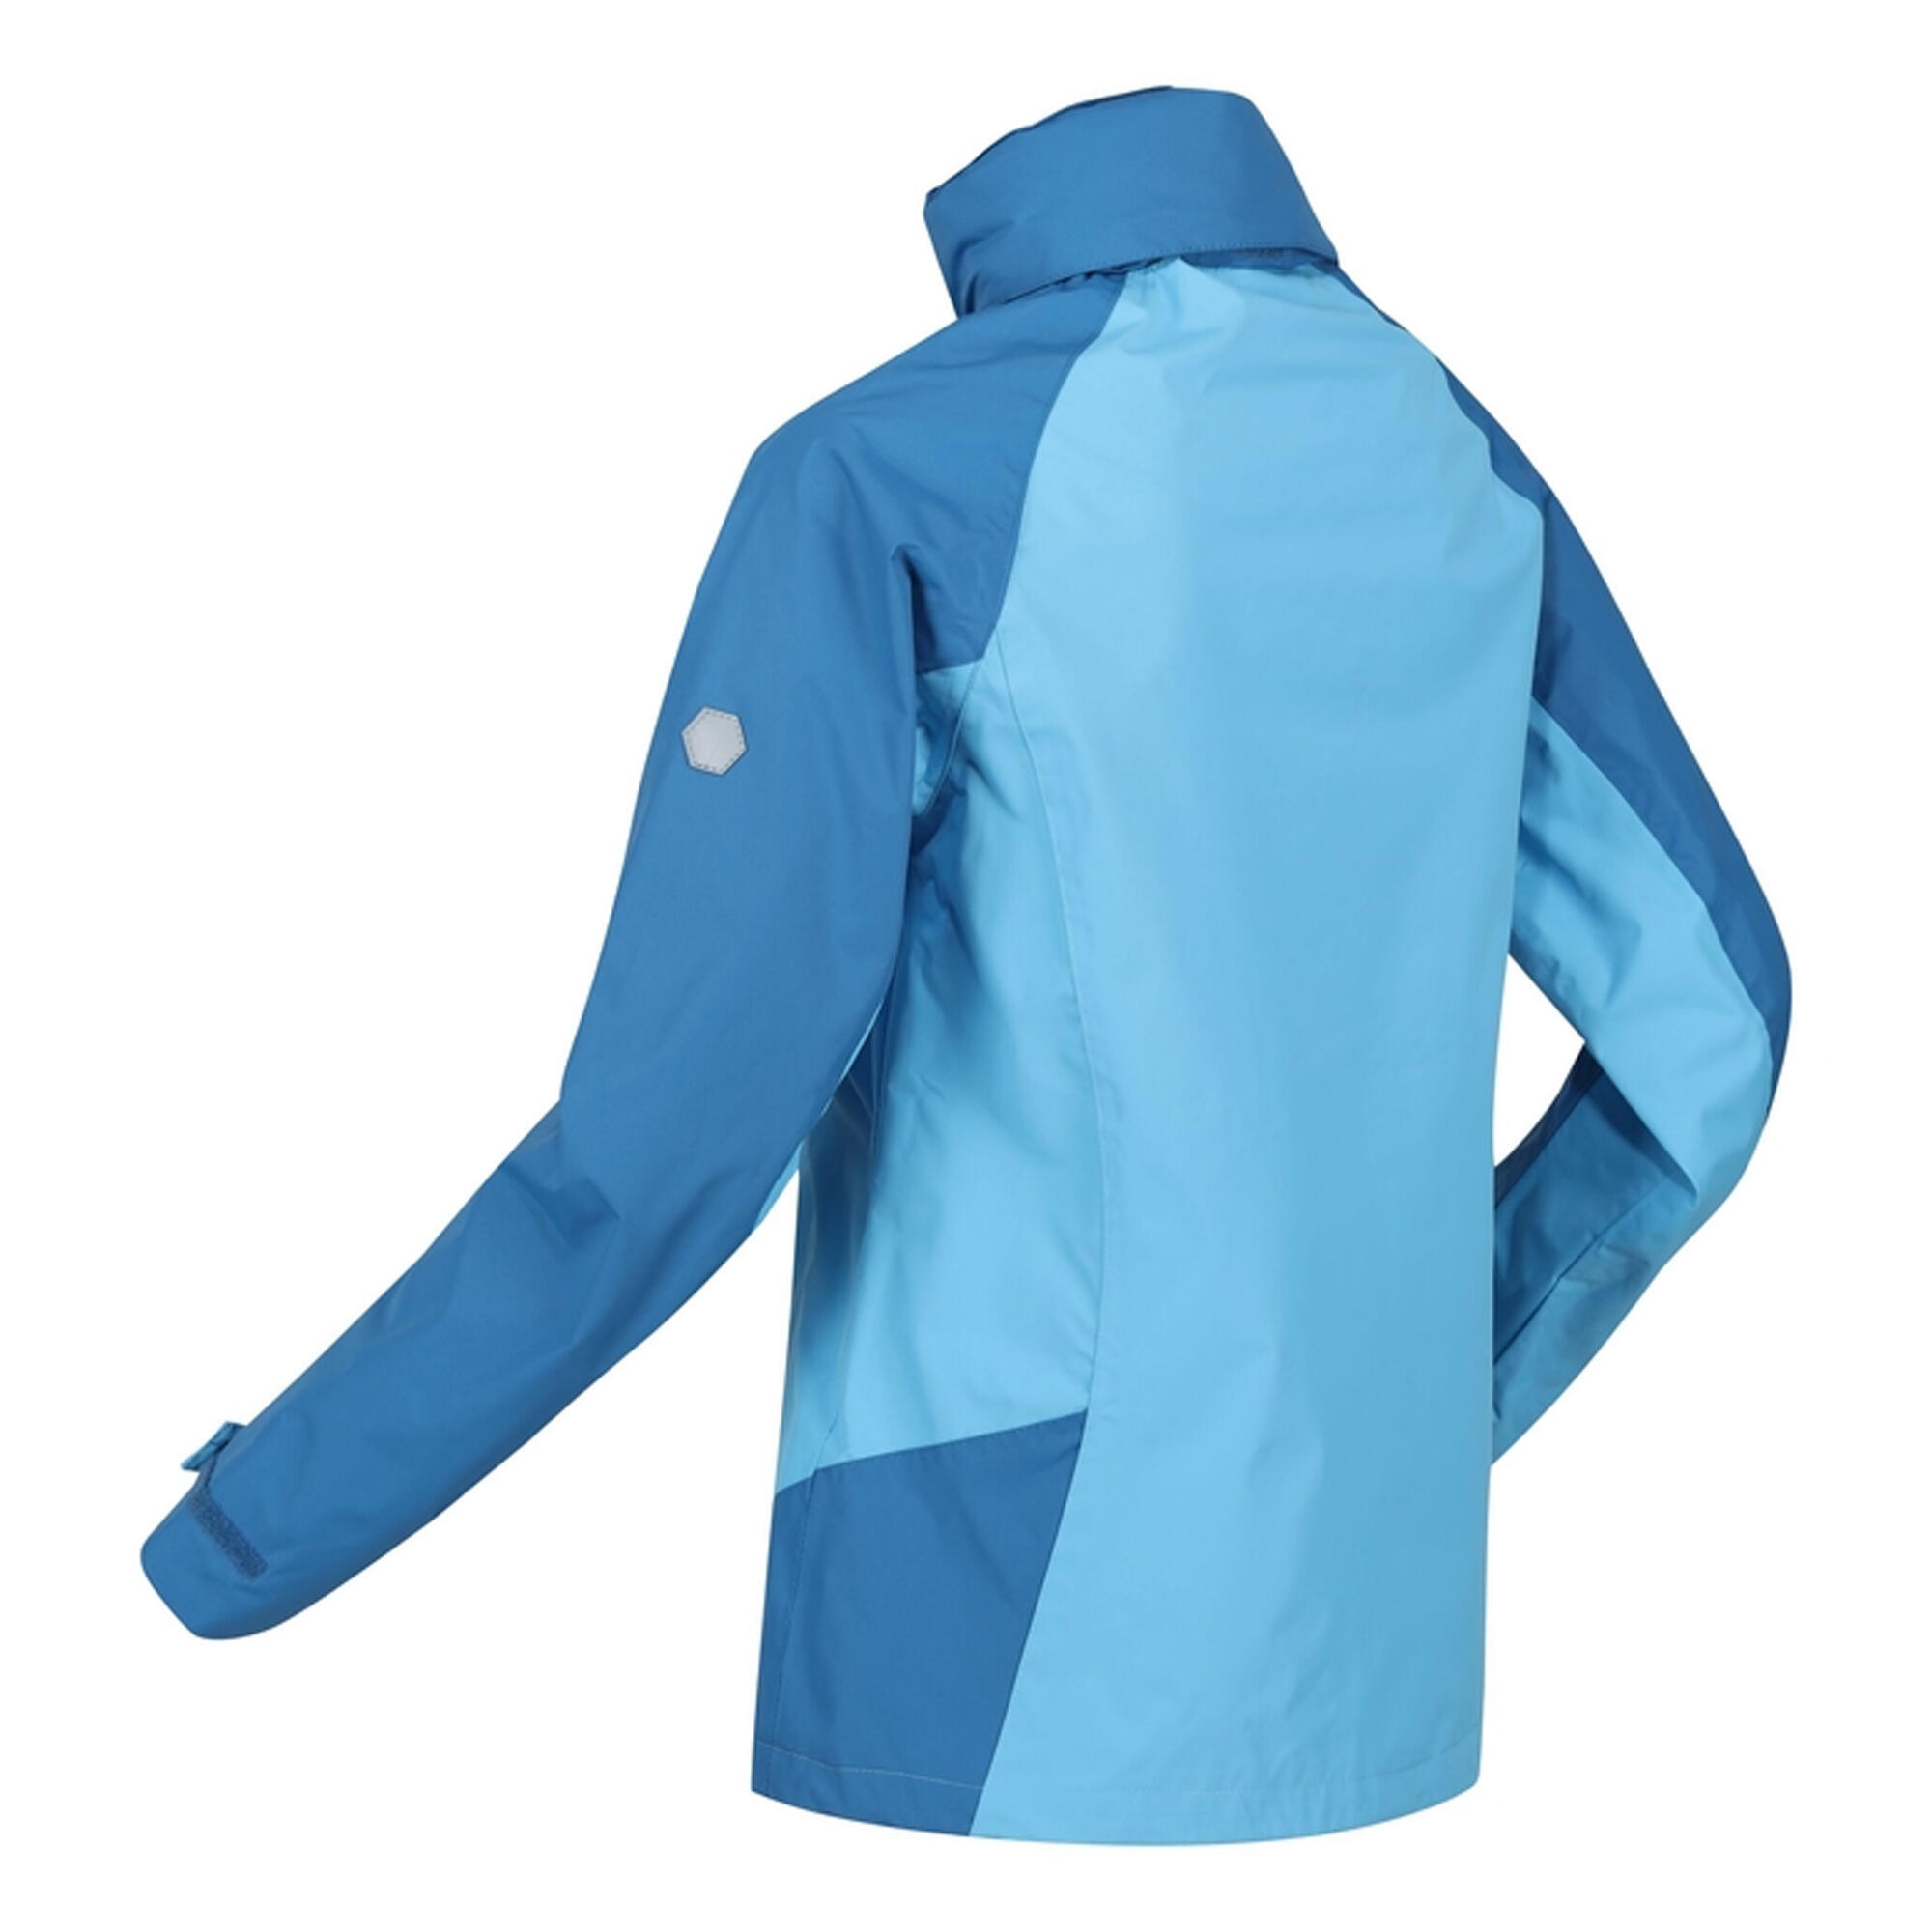 Womens/Ladies Calderdale IV Waterproof Jacket (Ethereal/Vallarta Blue) 4/5